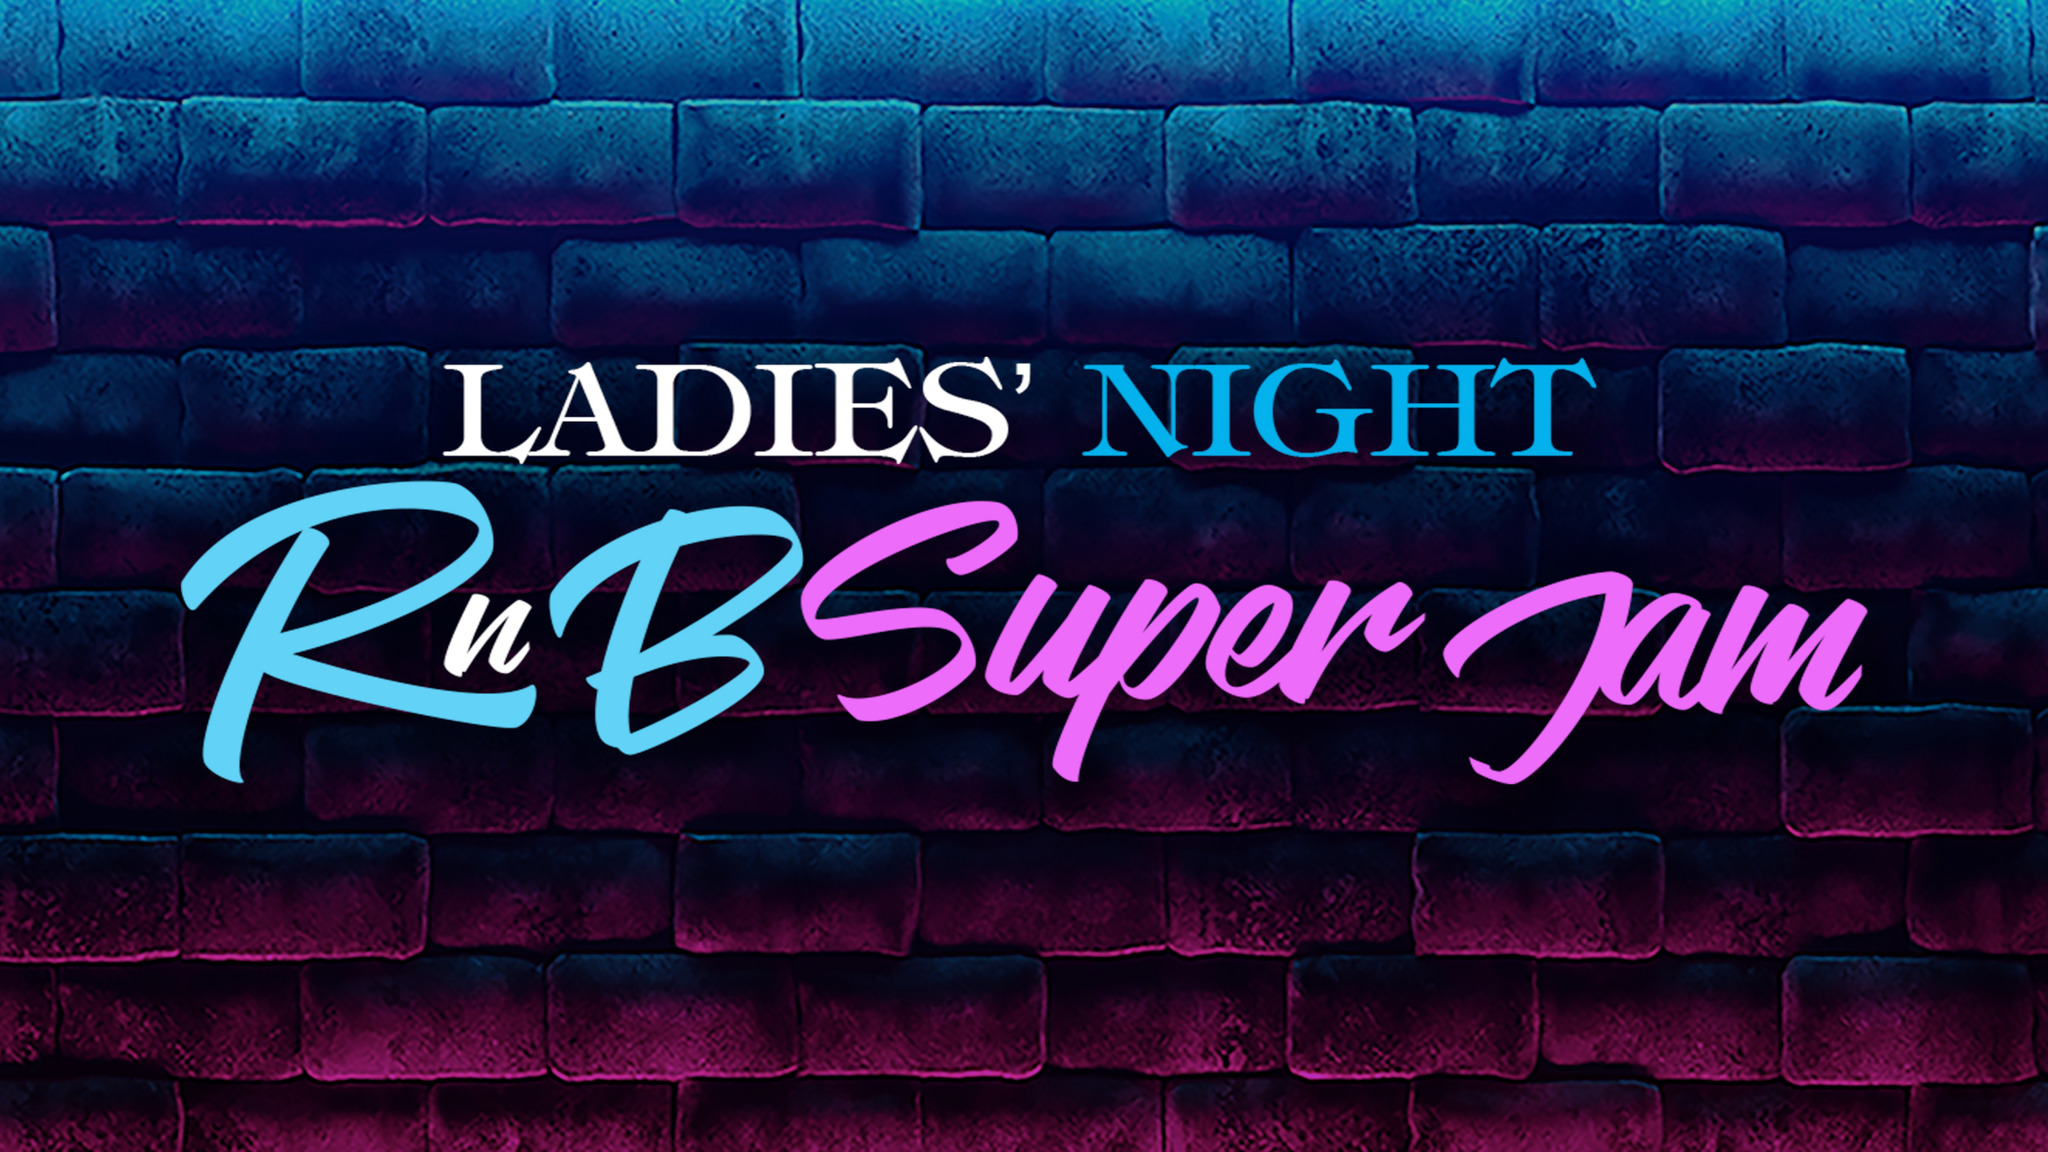 Ladies Night R&B Super Jam Billets Dates d'événements et Calendrier